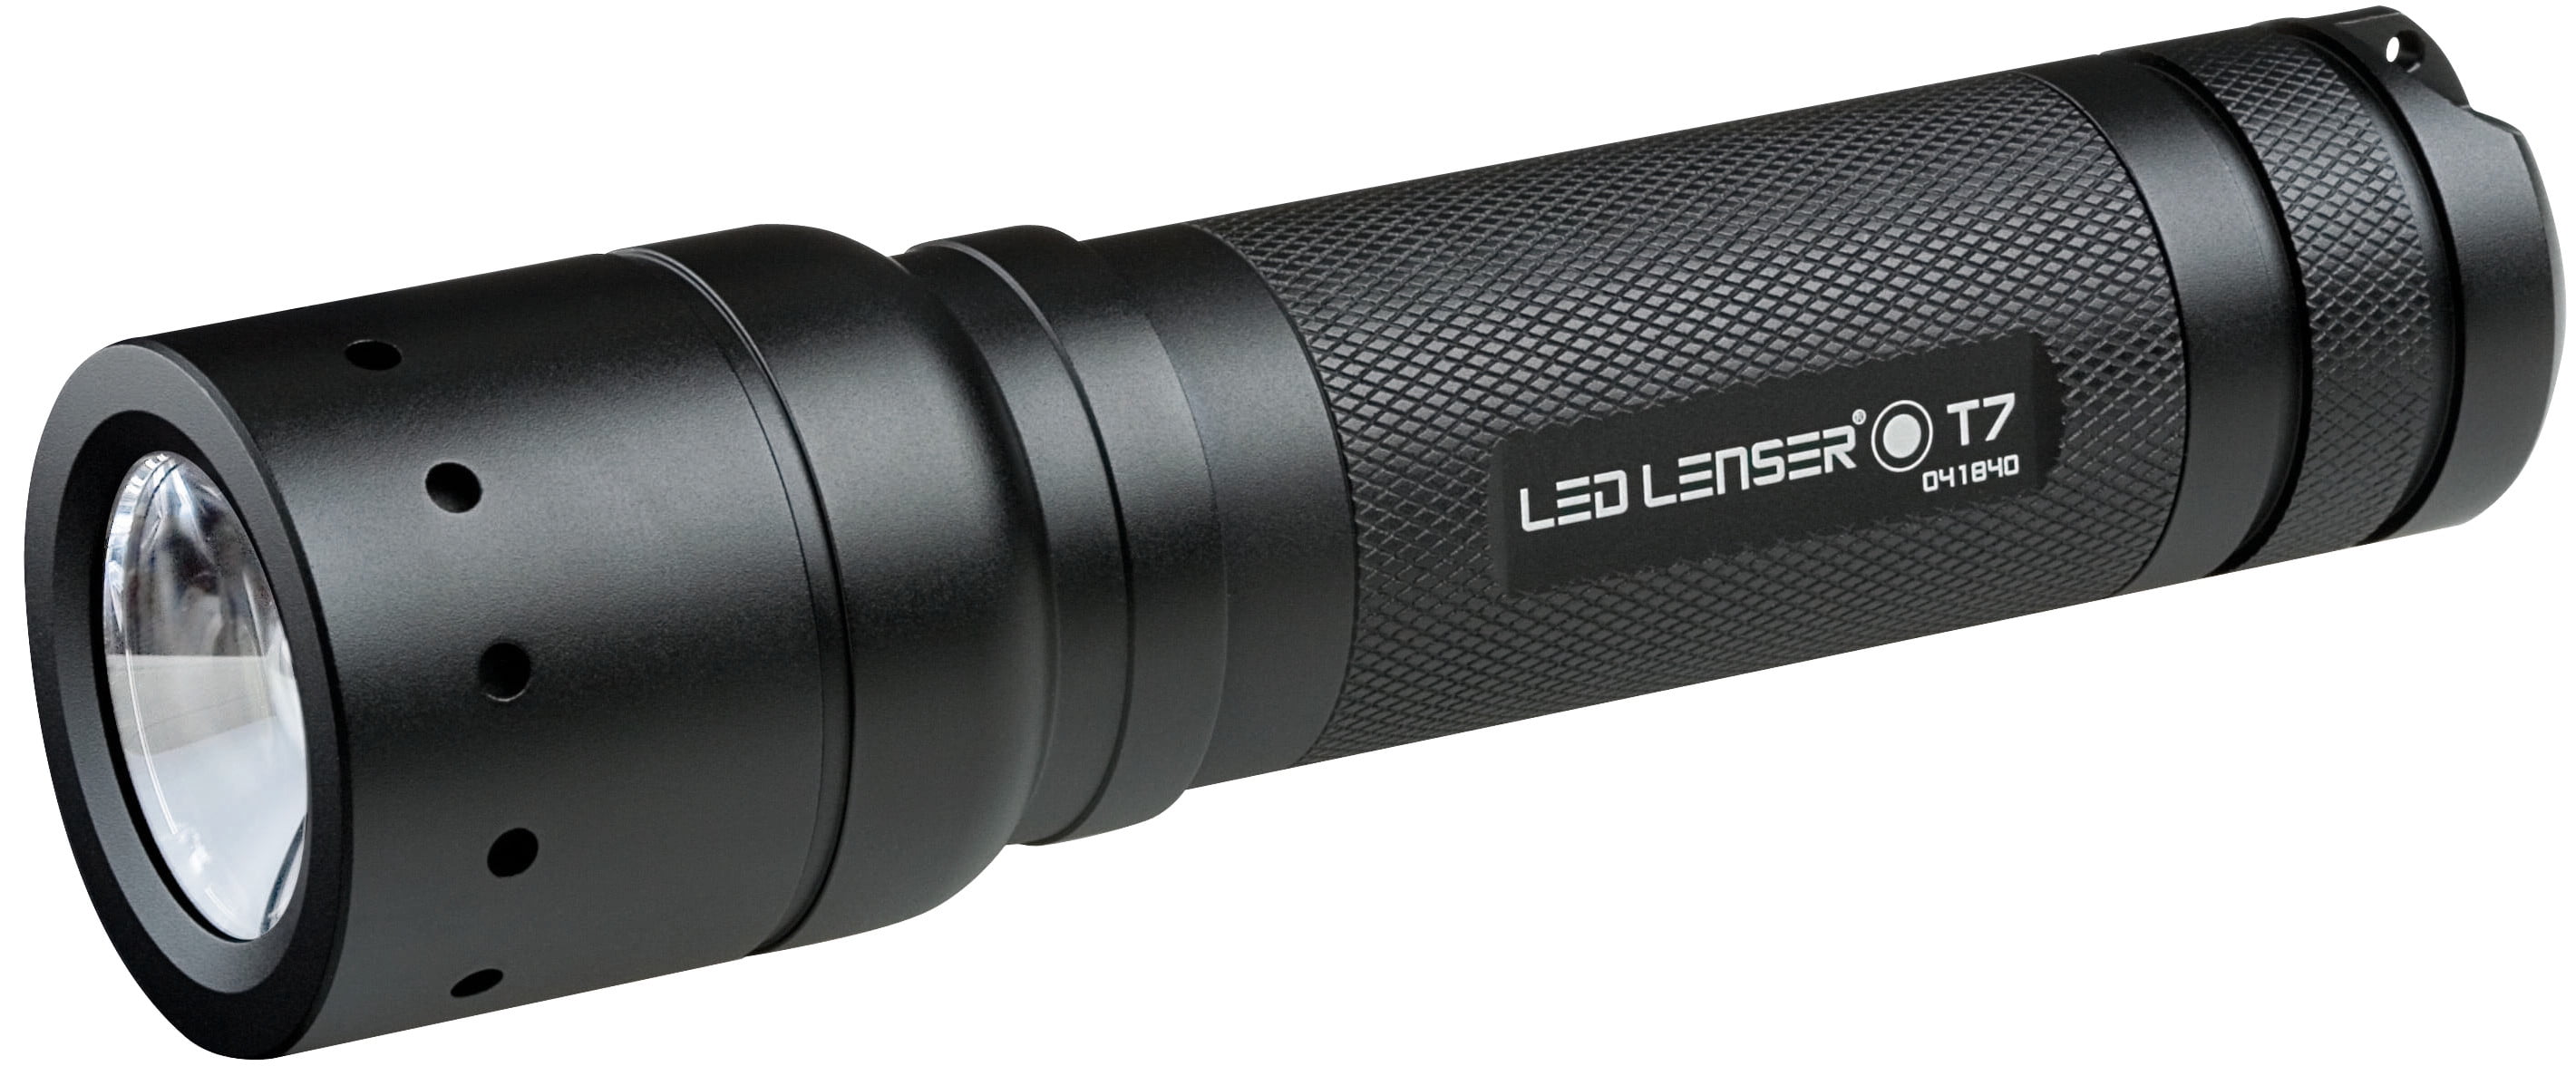 LED Lenser T Series - Walmart.com